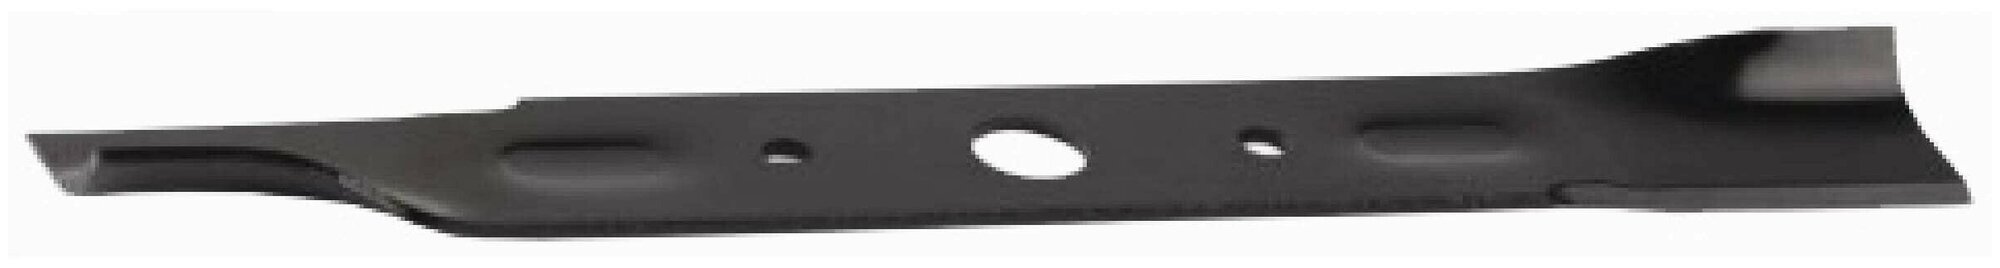 Нож GRINDA для роторной эл. косилки 8-43060-38, 380 мм